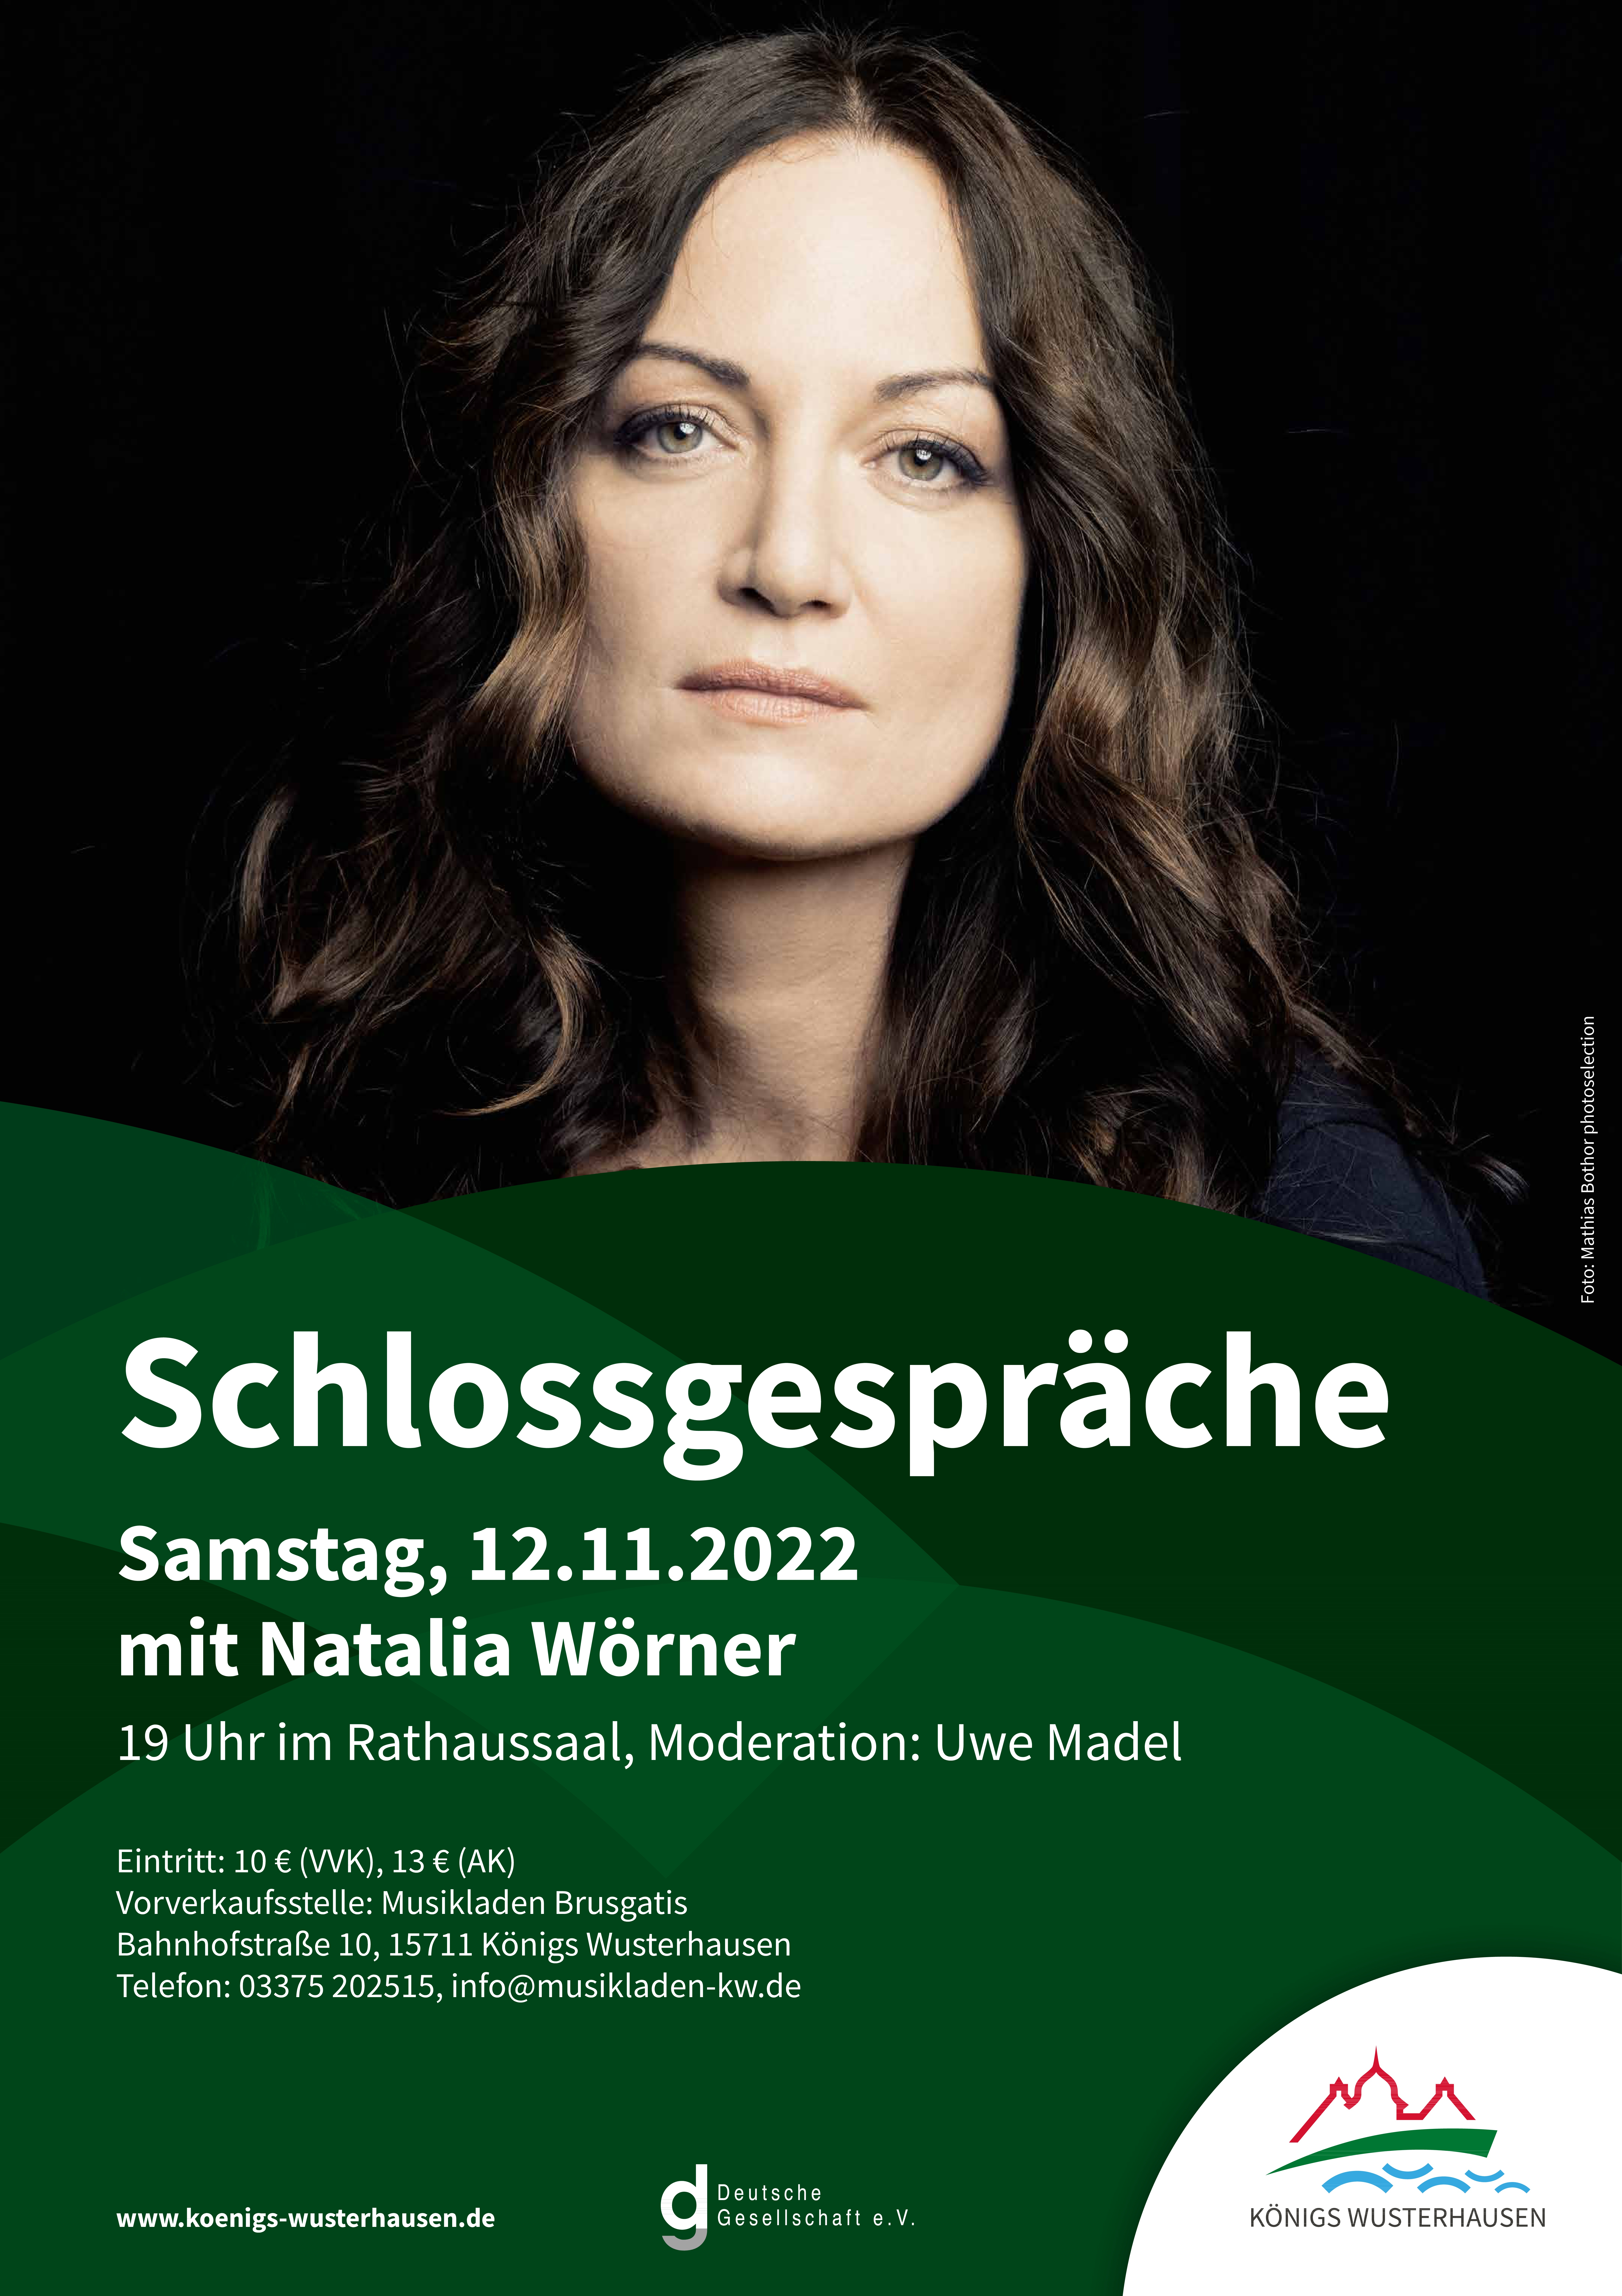 Schlossgespraeche Flyer 2022 09 24 LO 001 1 Seite